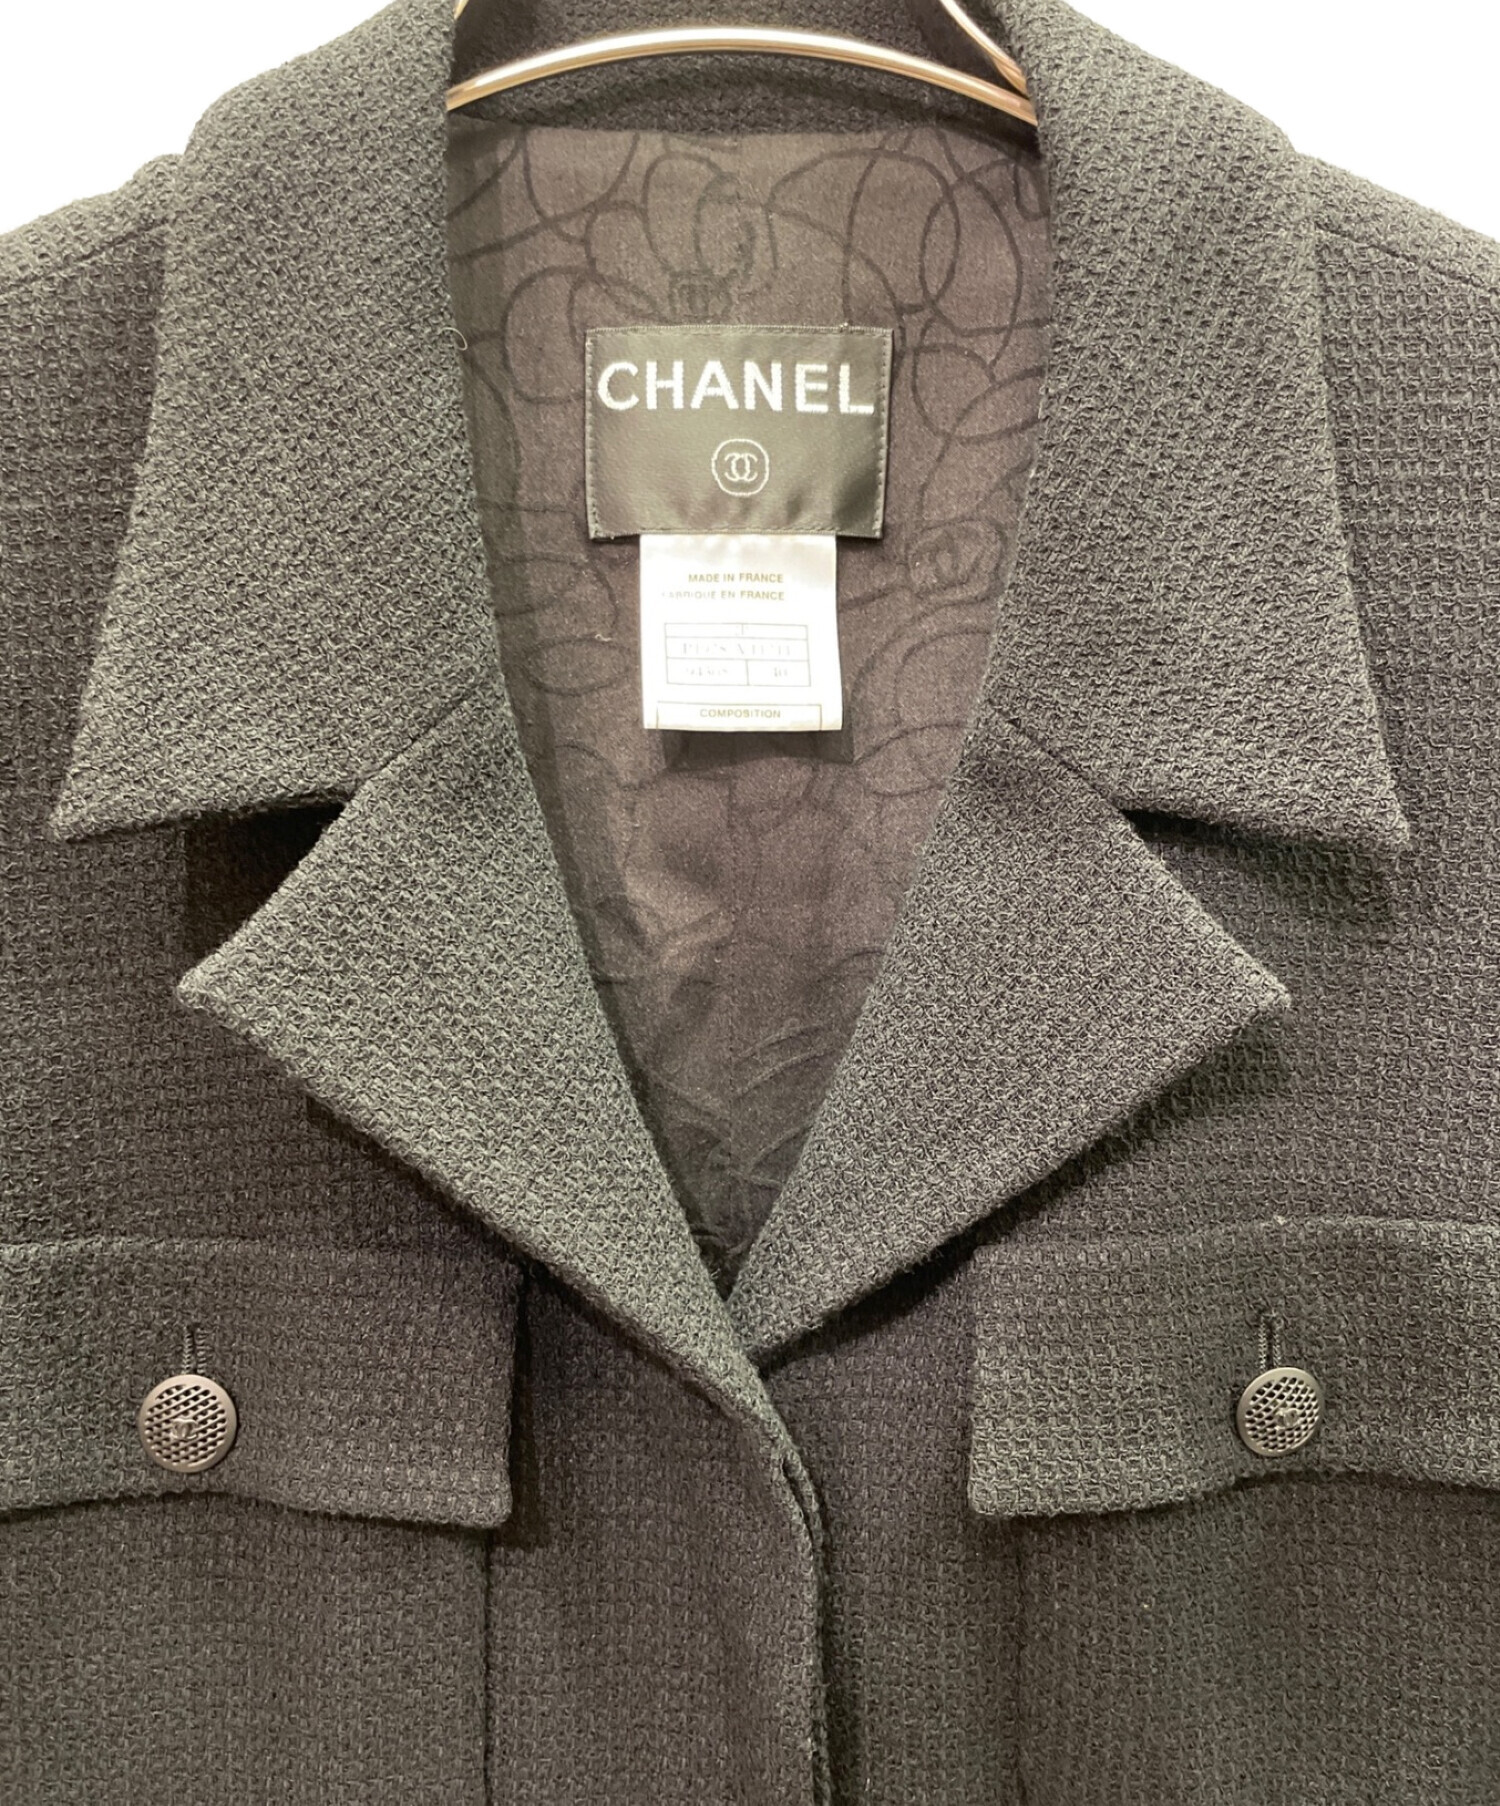 CHANEL (シャネル) CCマークジャケット ブラック サイズ:40